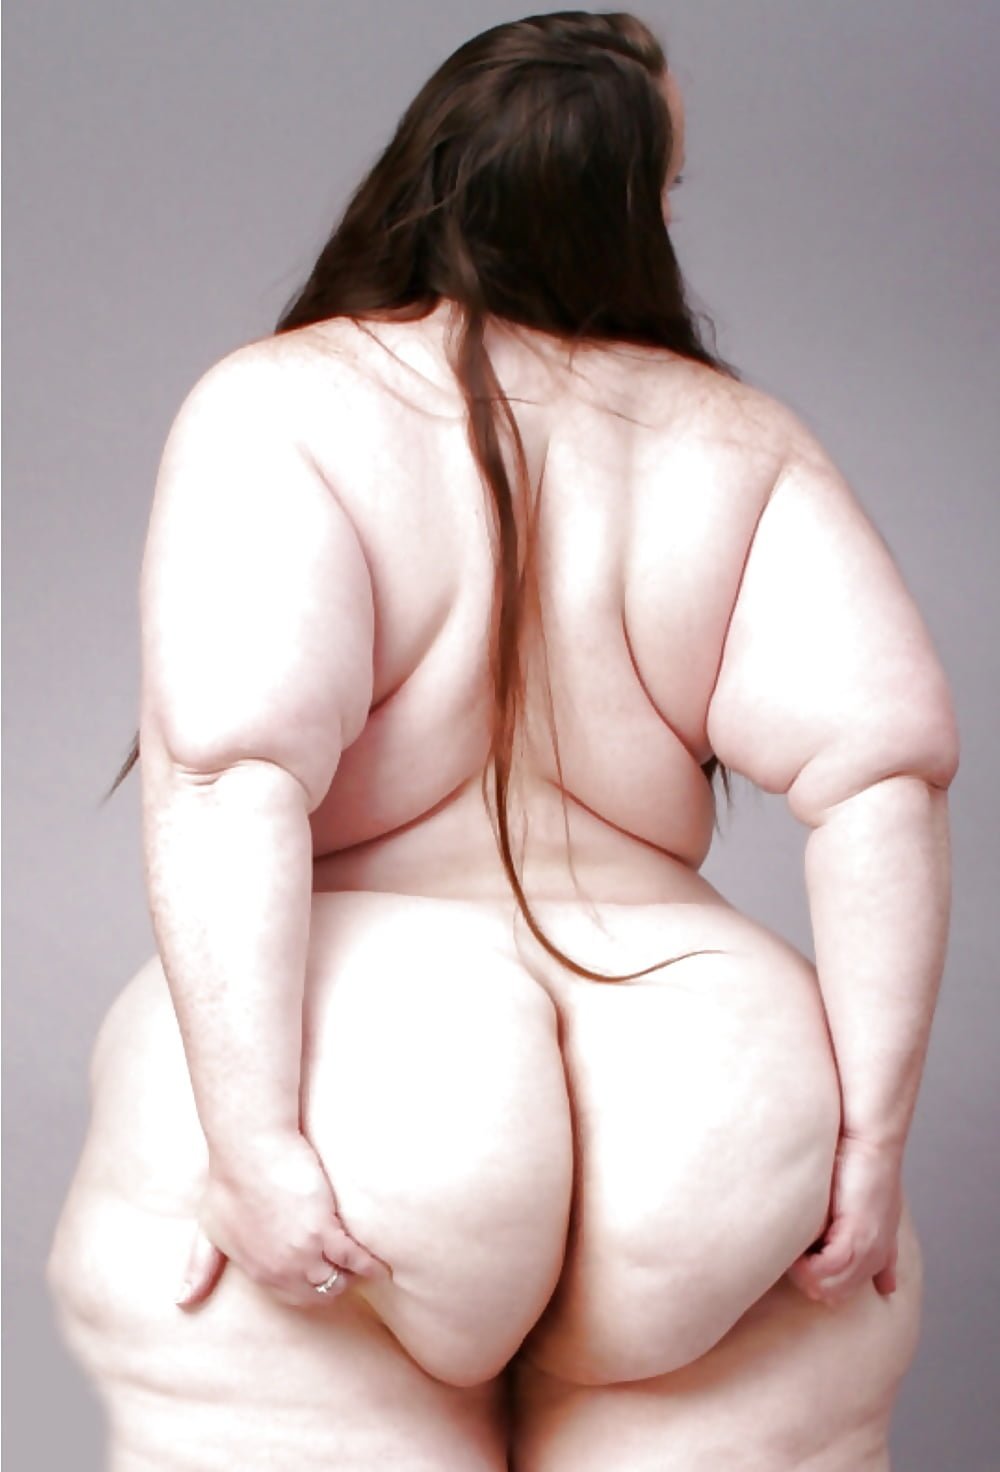 жопа толстой девушки фото 87